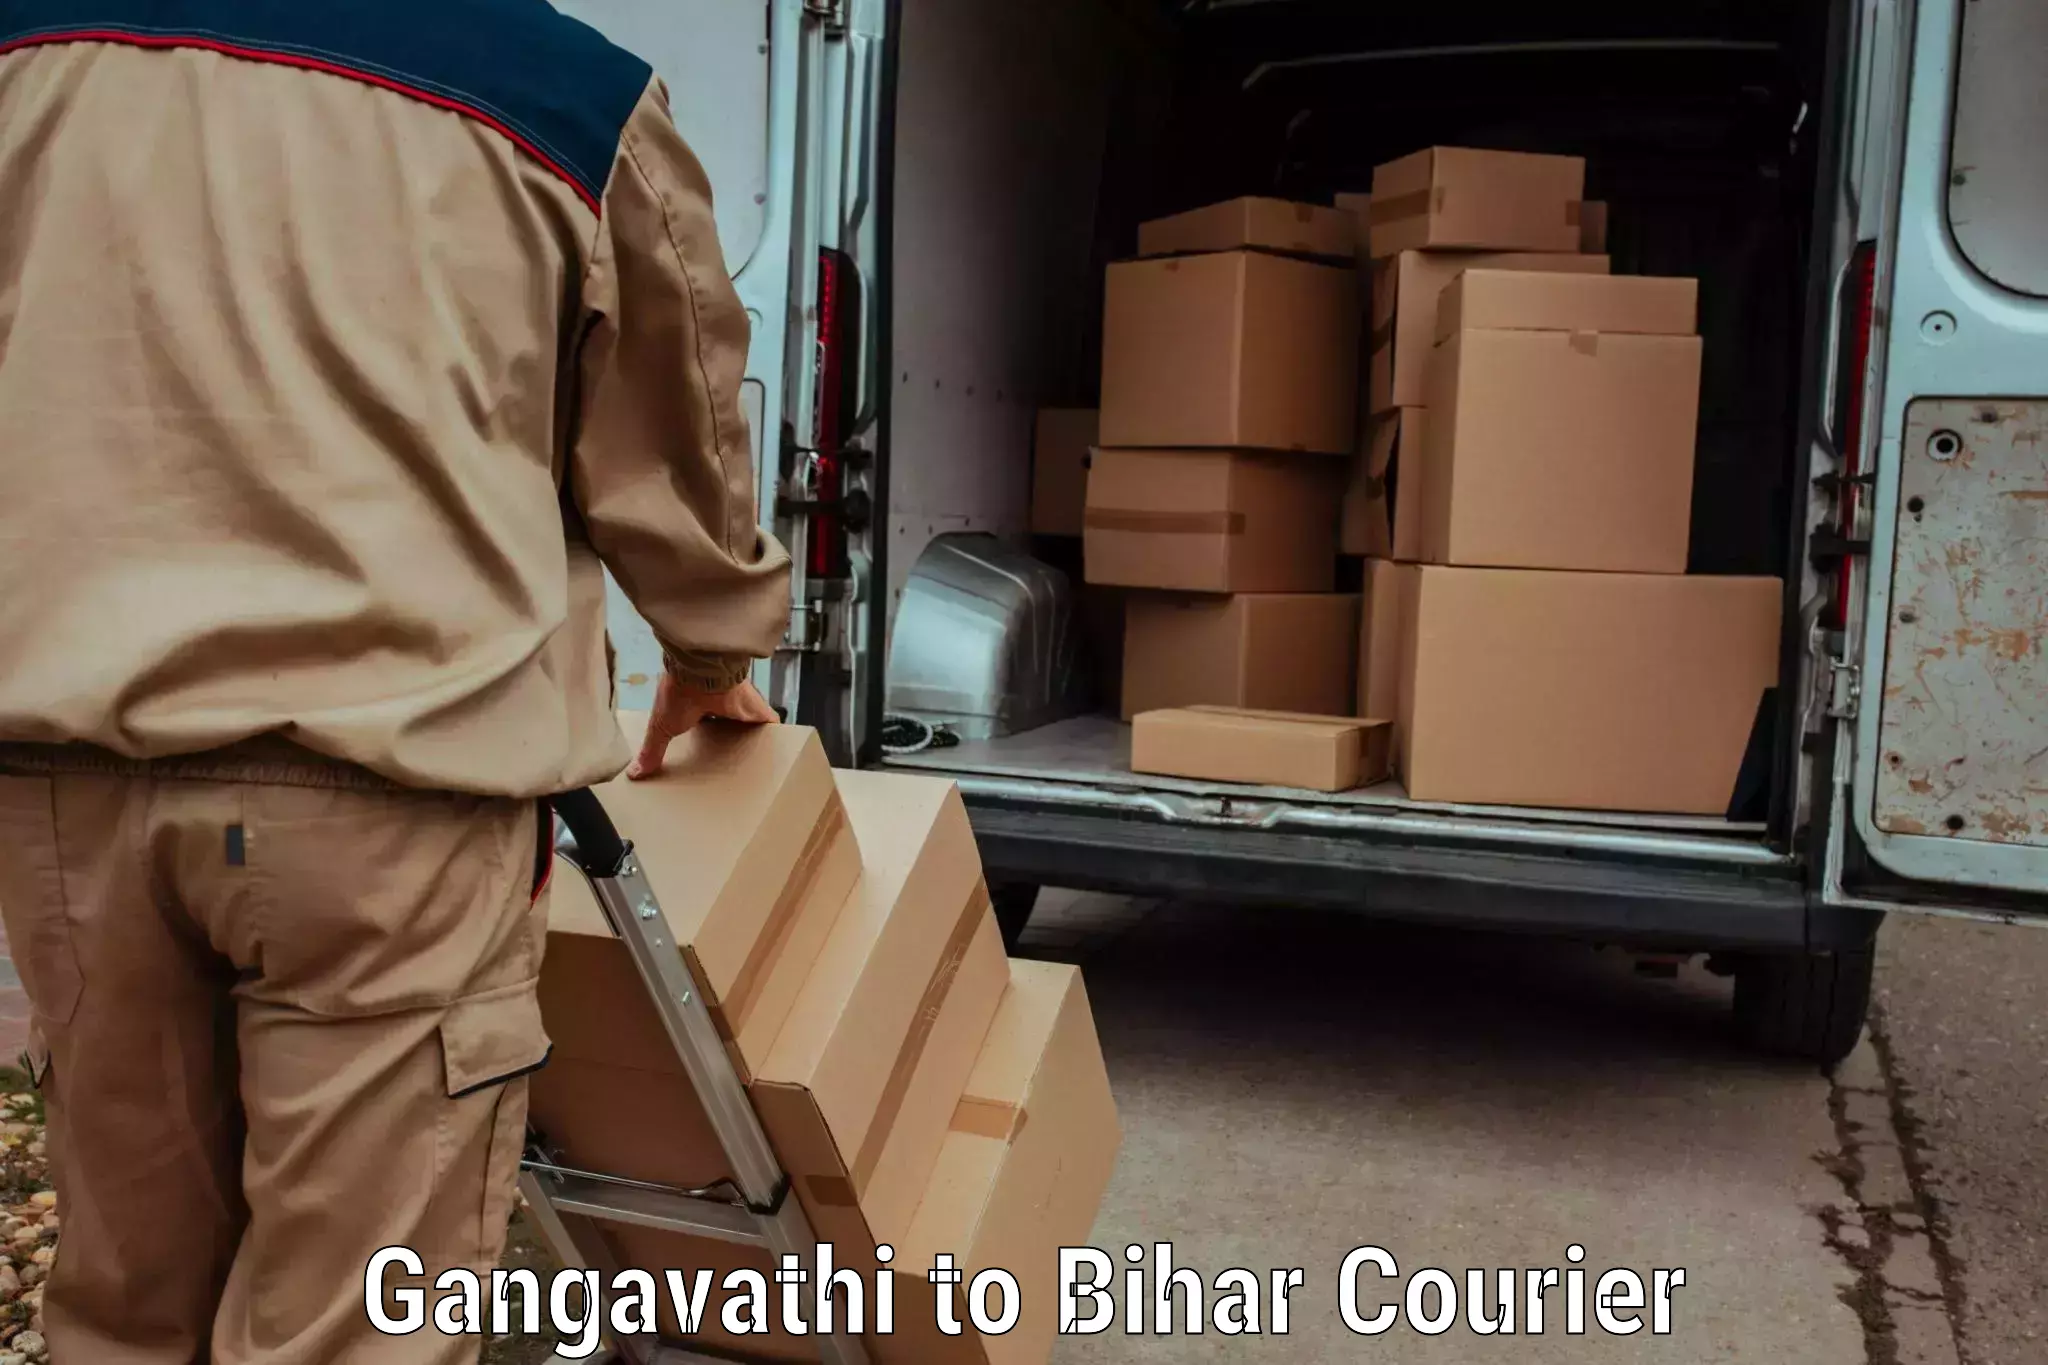 Express logistics service Gangavathi to Bhorey